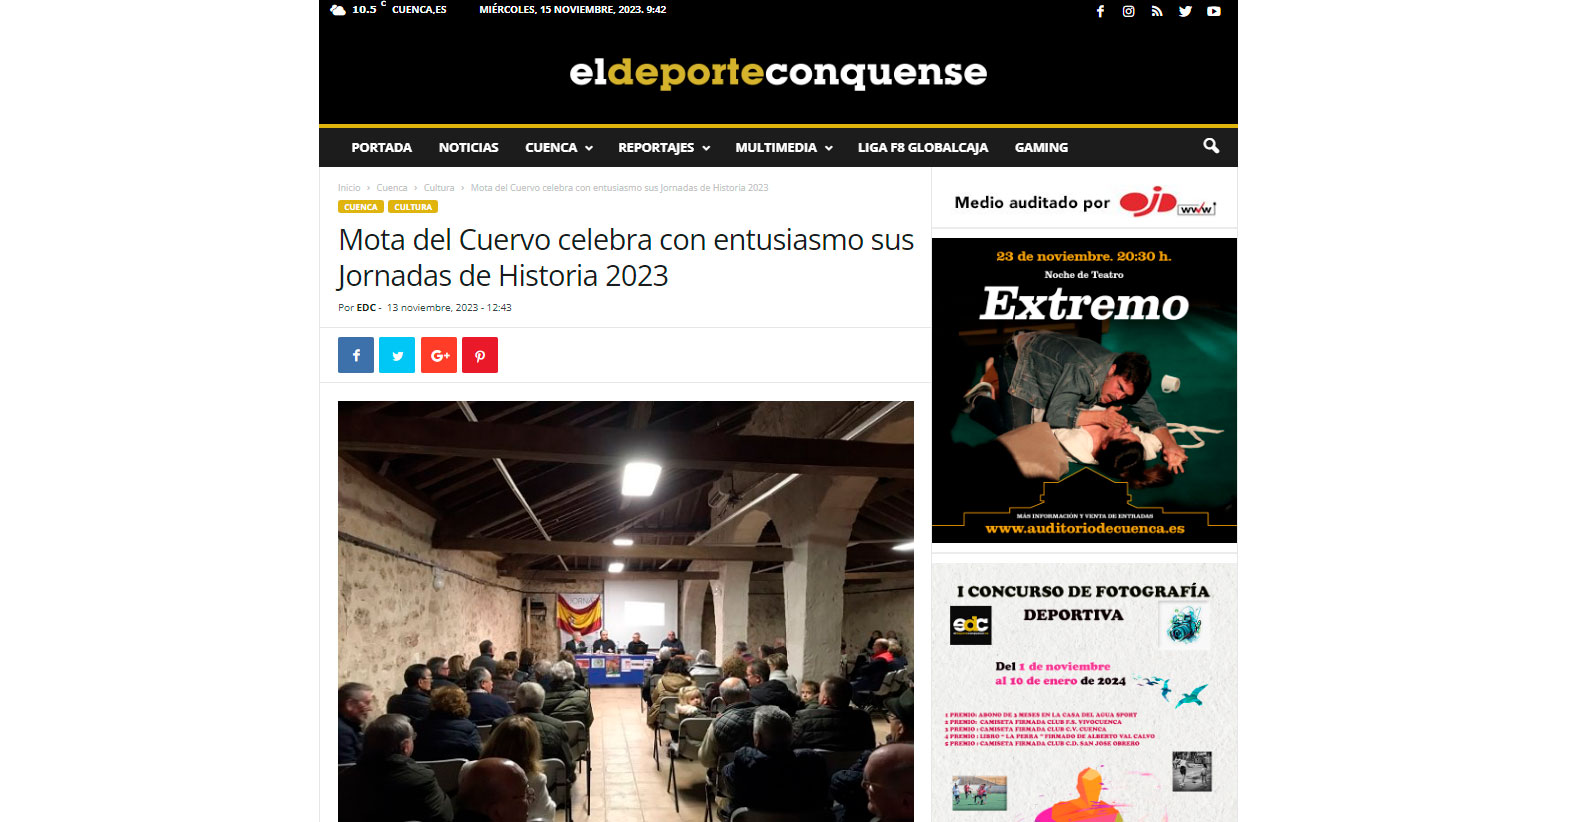 Mota del Cuervo celebra con entusiasmo sus Jornadas de Historia 2023